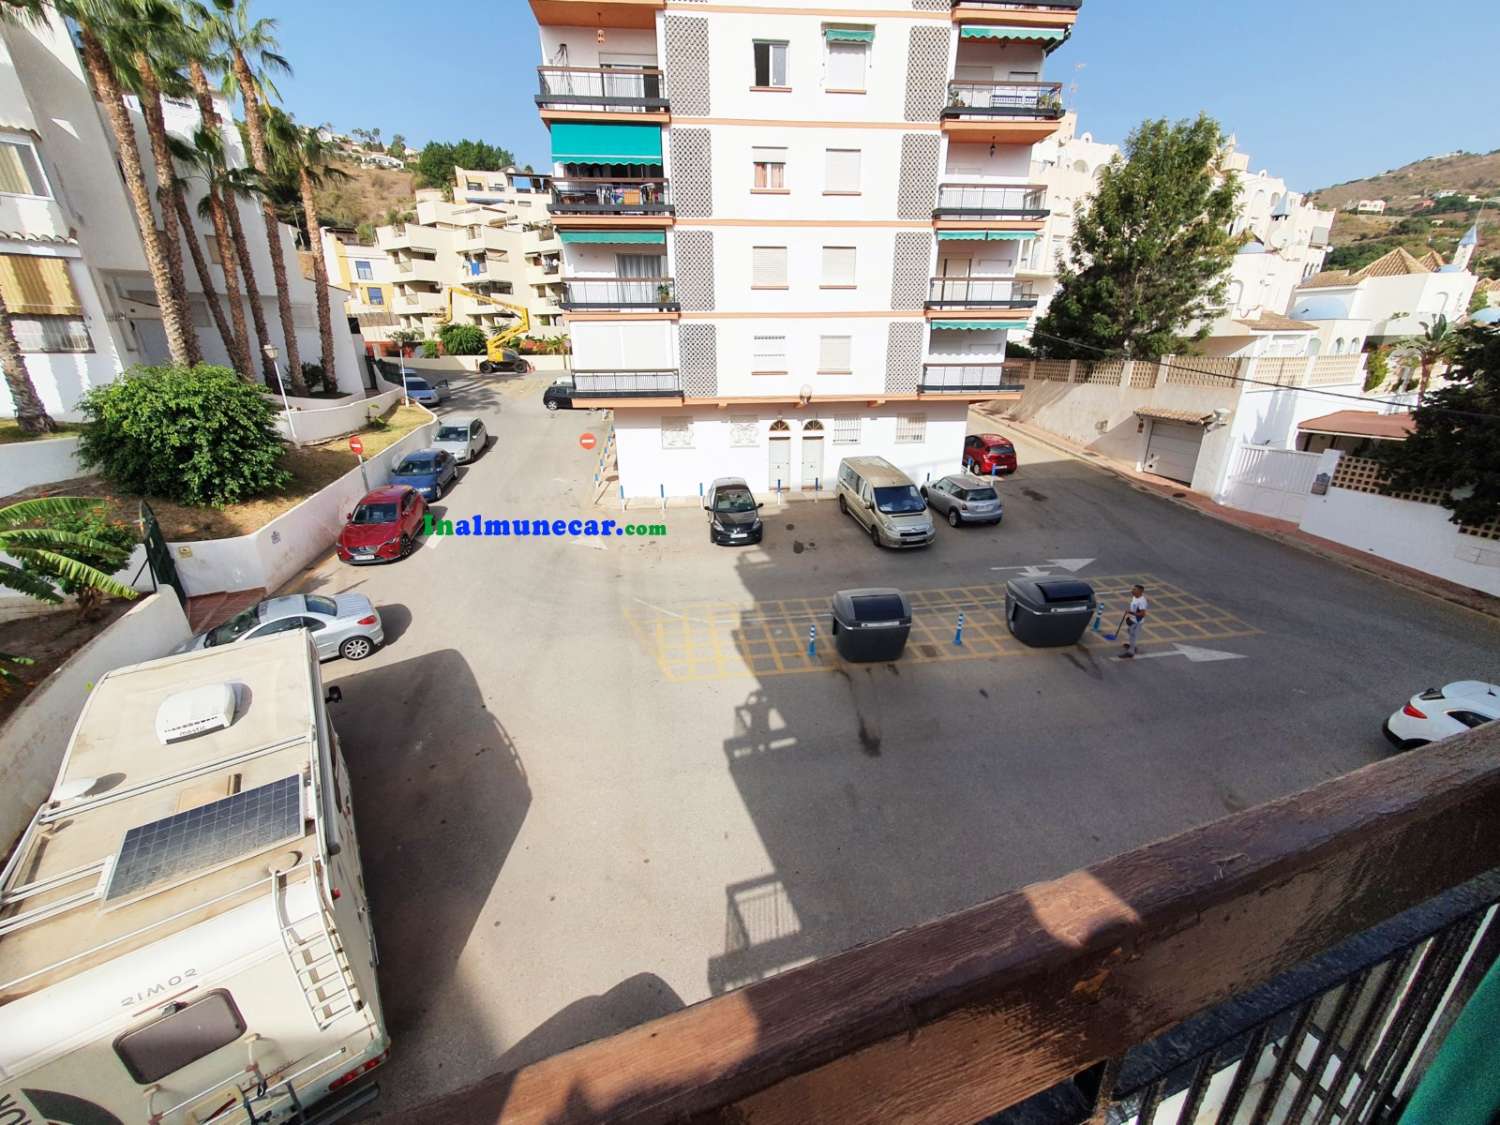 Appartement rénové à vendre à Almuñecar situé sur la 2ème ligne de la plage avec parking communautaire.